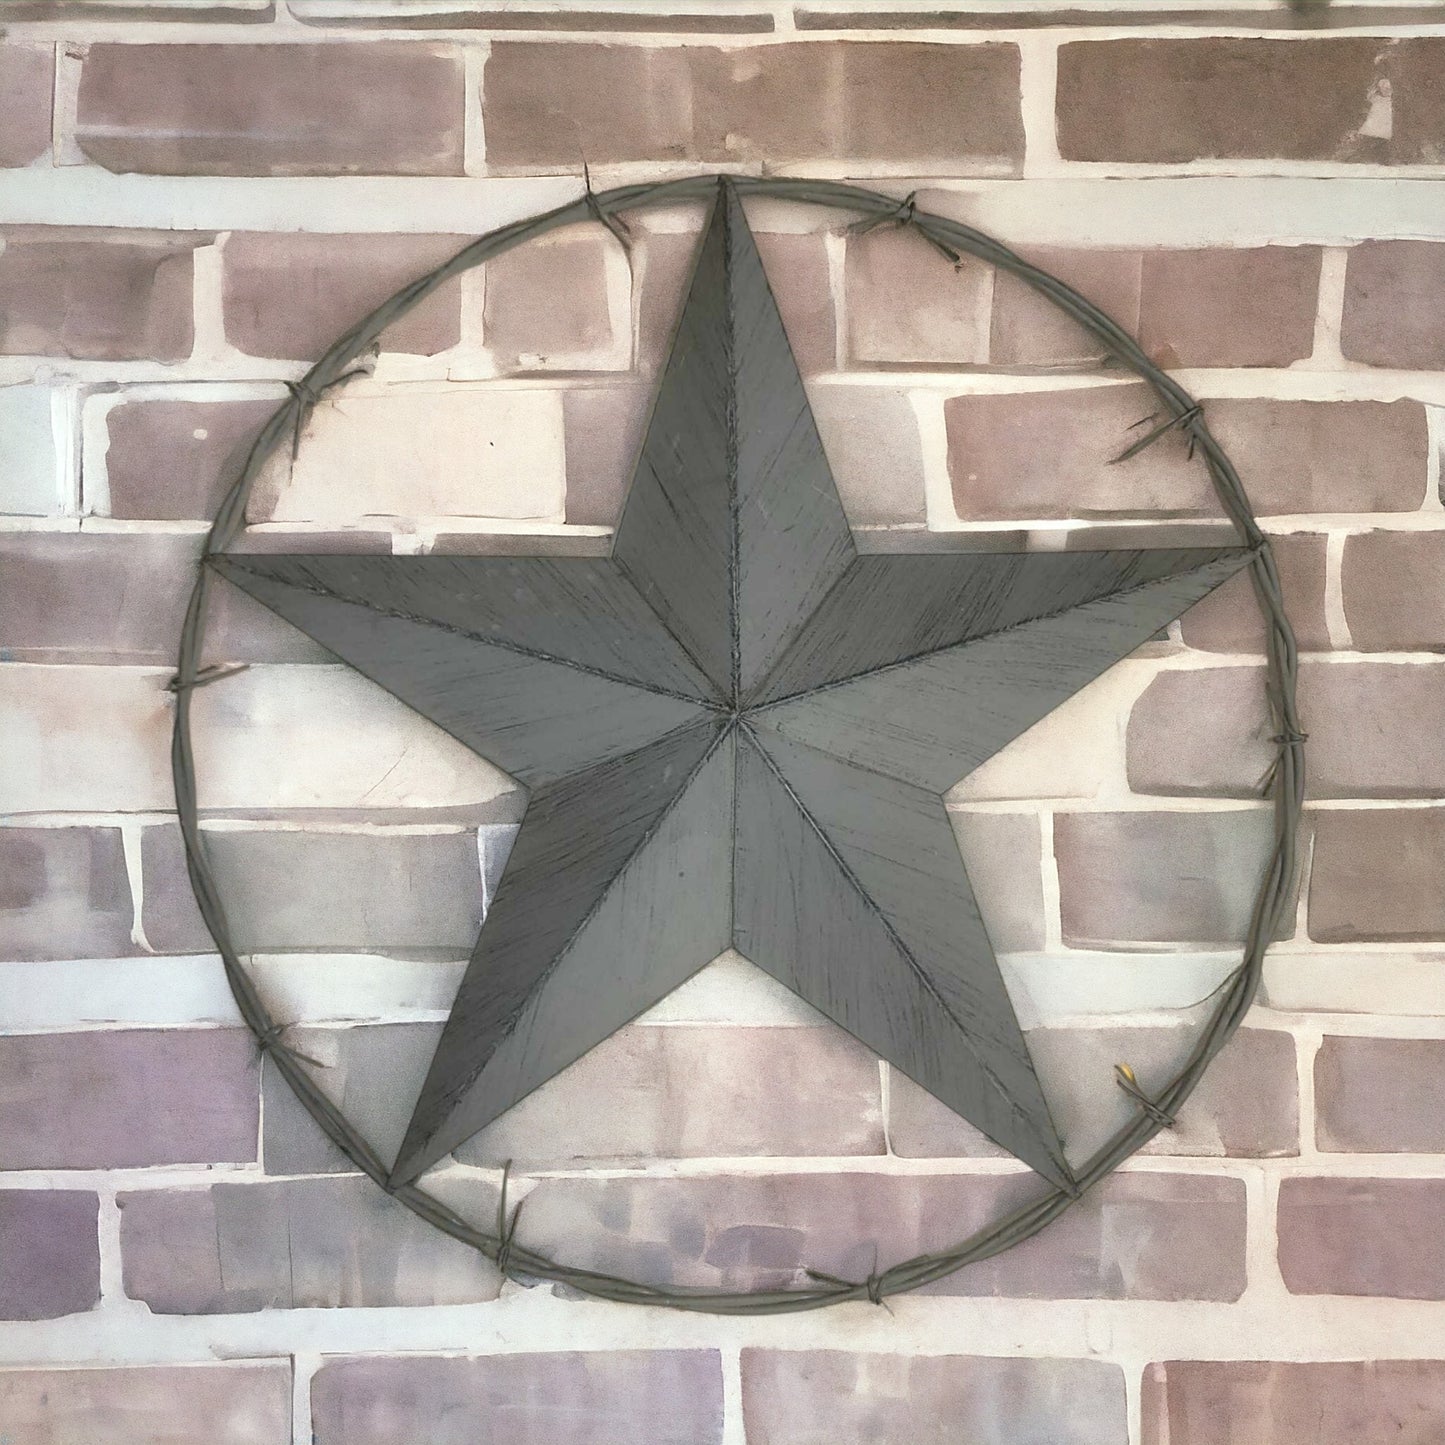 Lone Star, Texas Star, Barb Wire, Barn Star